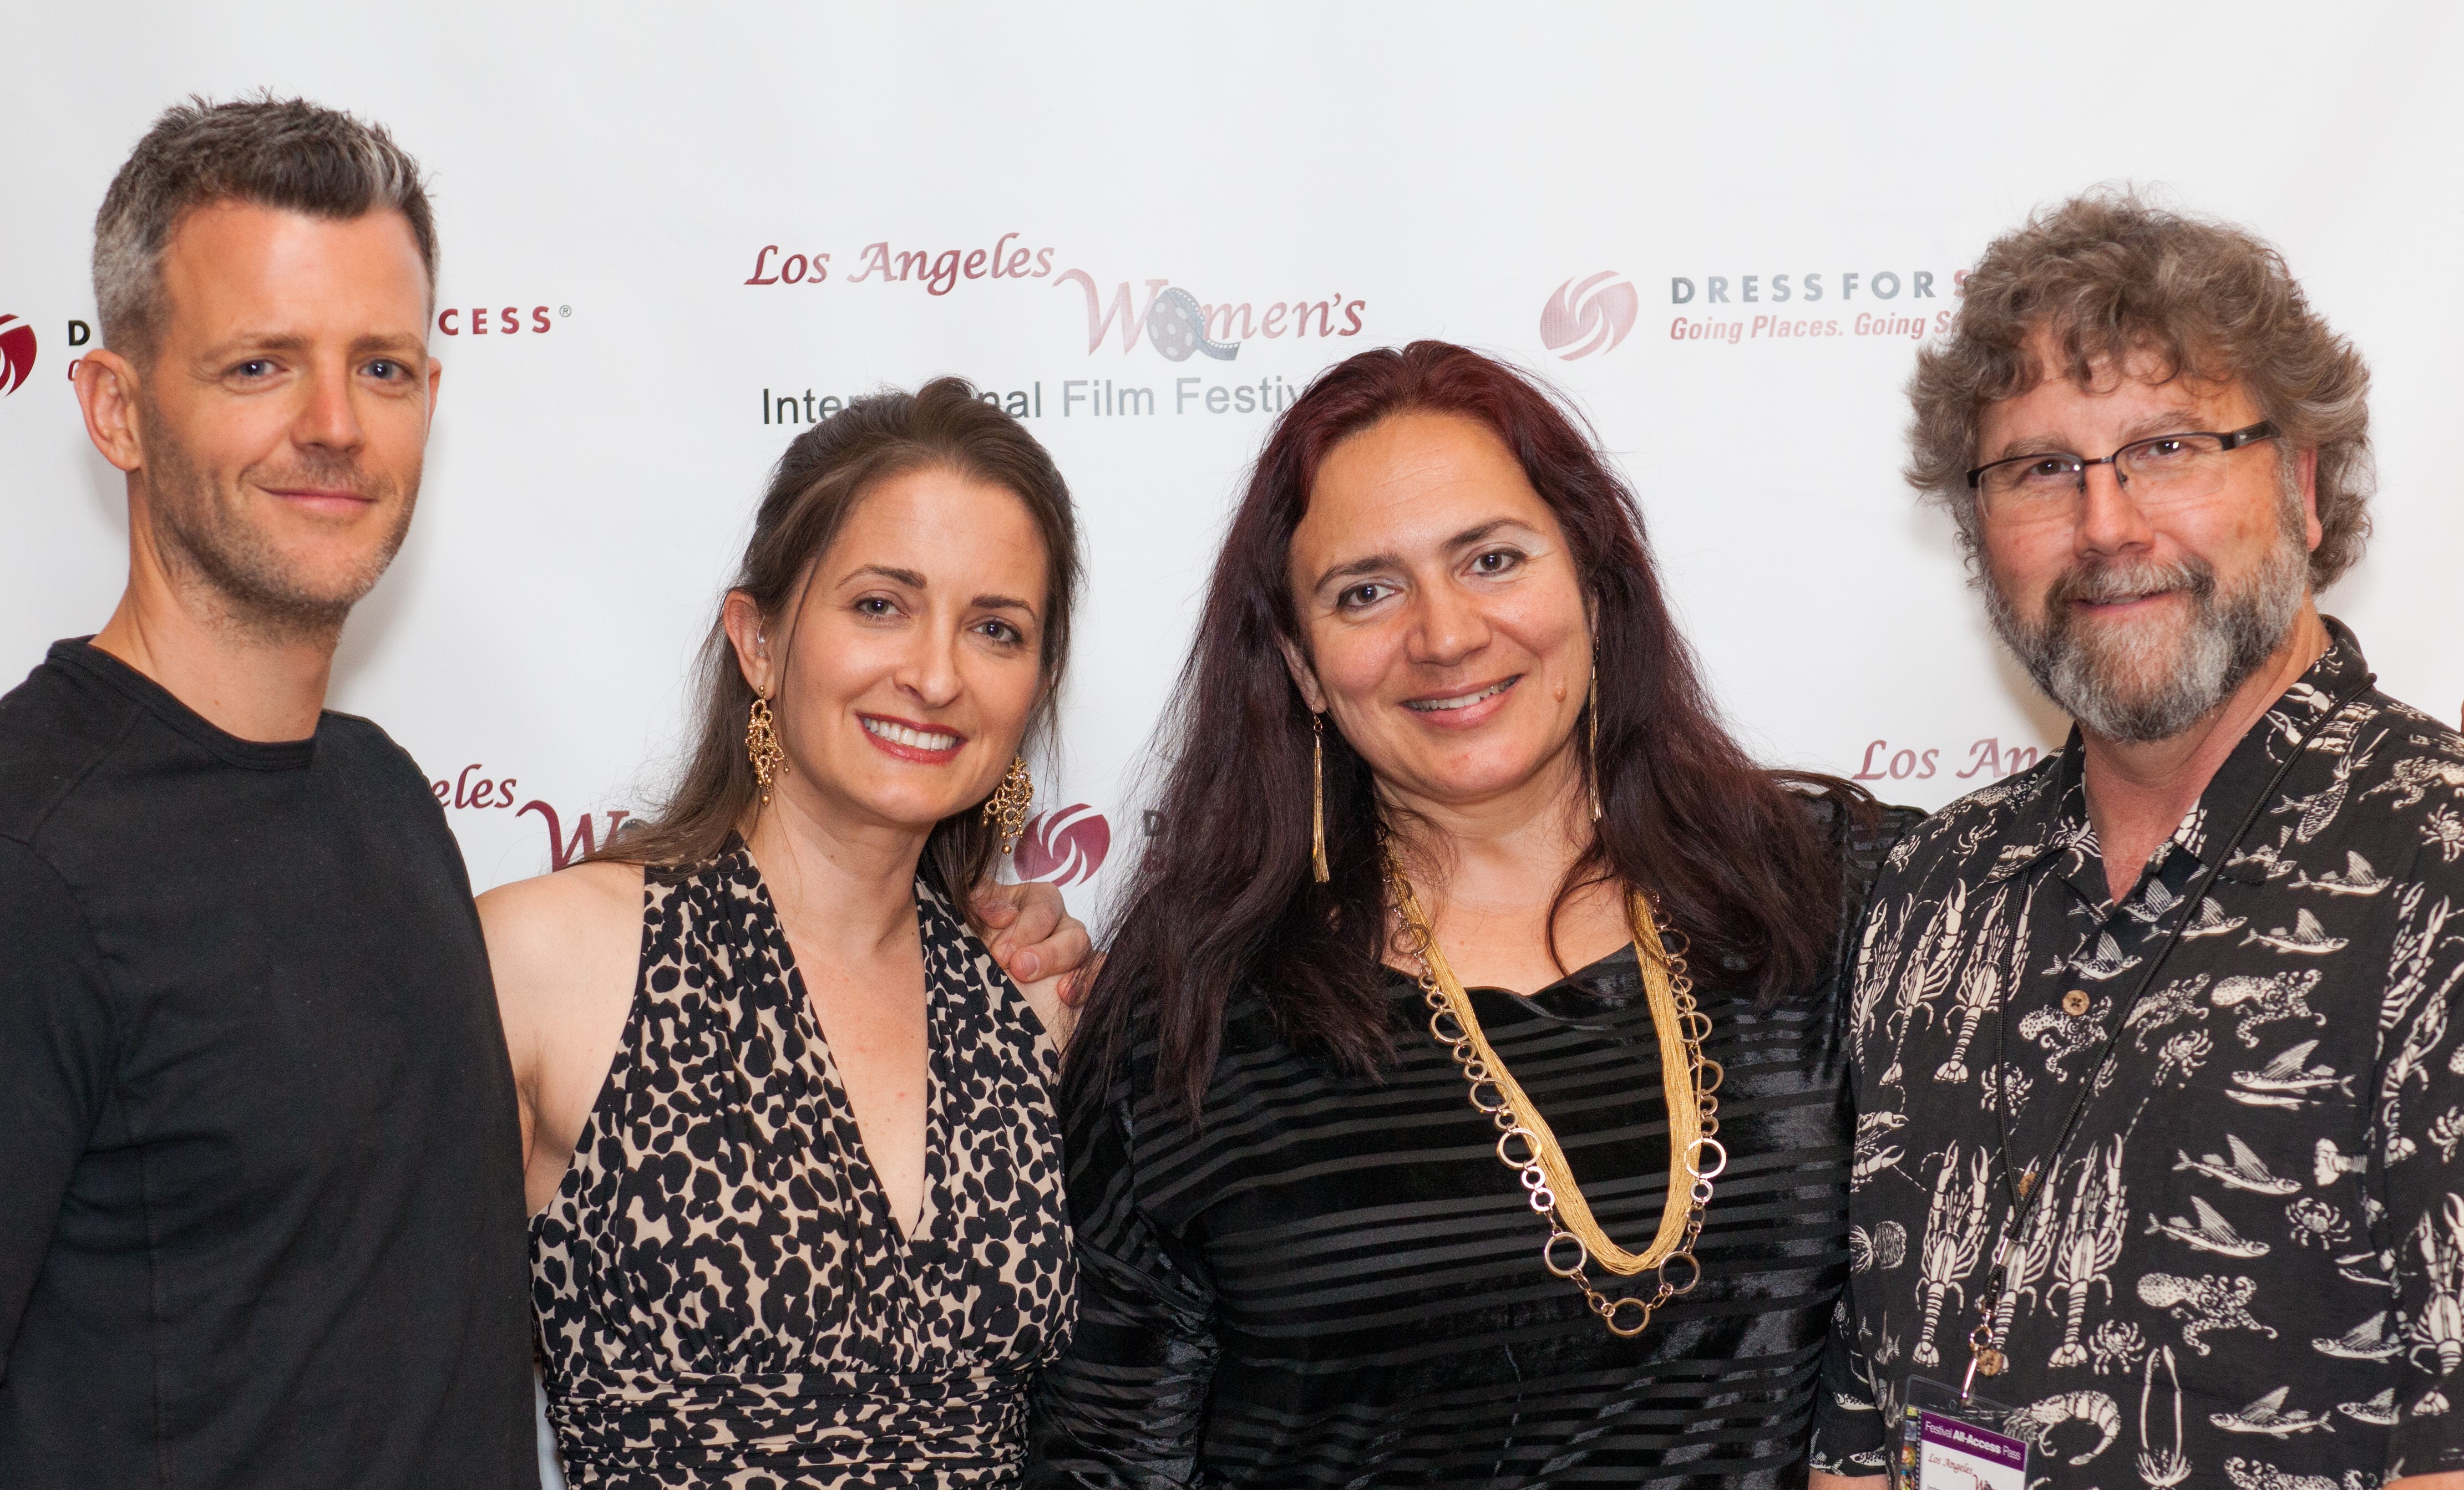 Curtis Mark Williams, Kathleen Davison, Penka Kouneva, and Bobby Finley - Los Angeles Women's International Film Festival